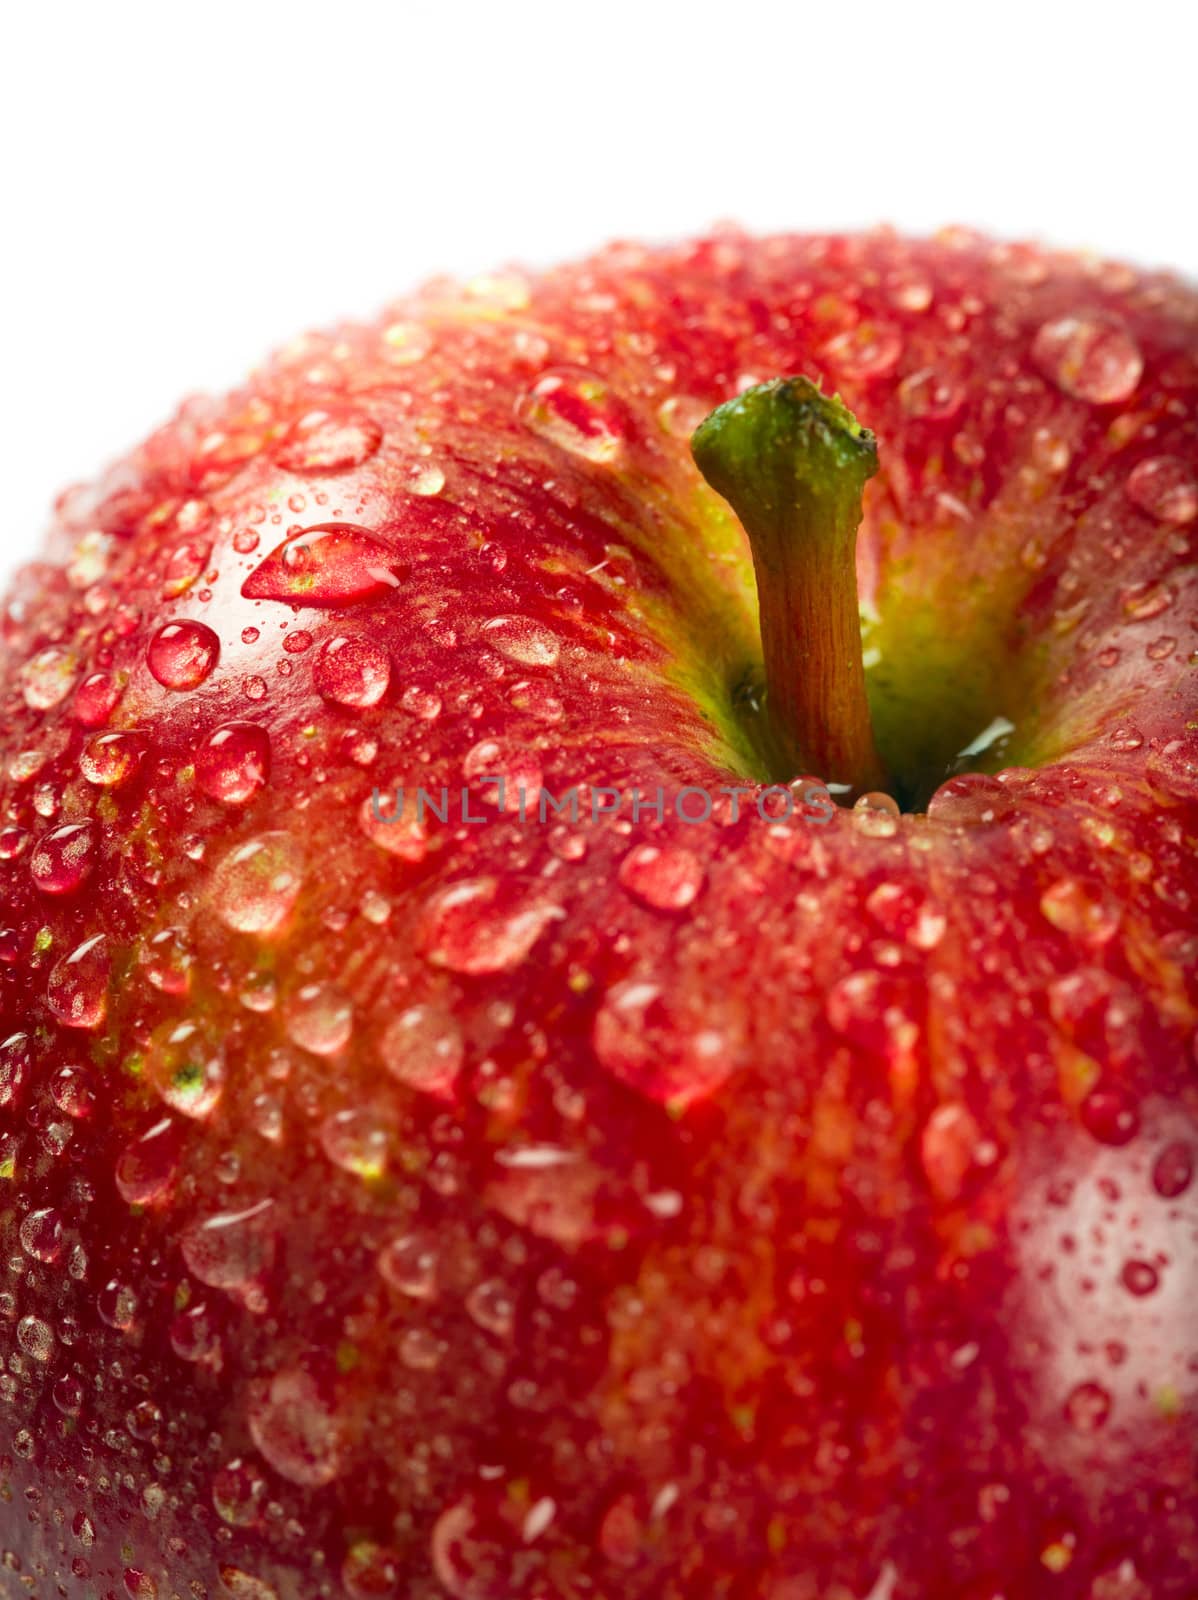 Wet red apple macro by sumners